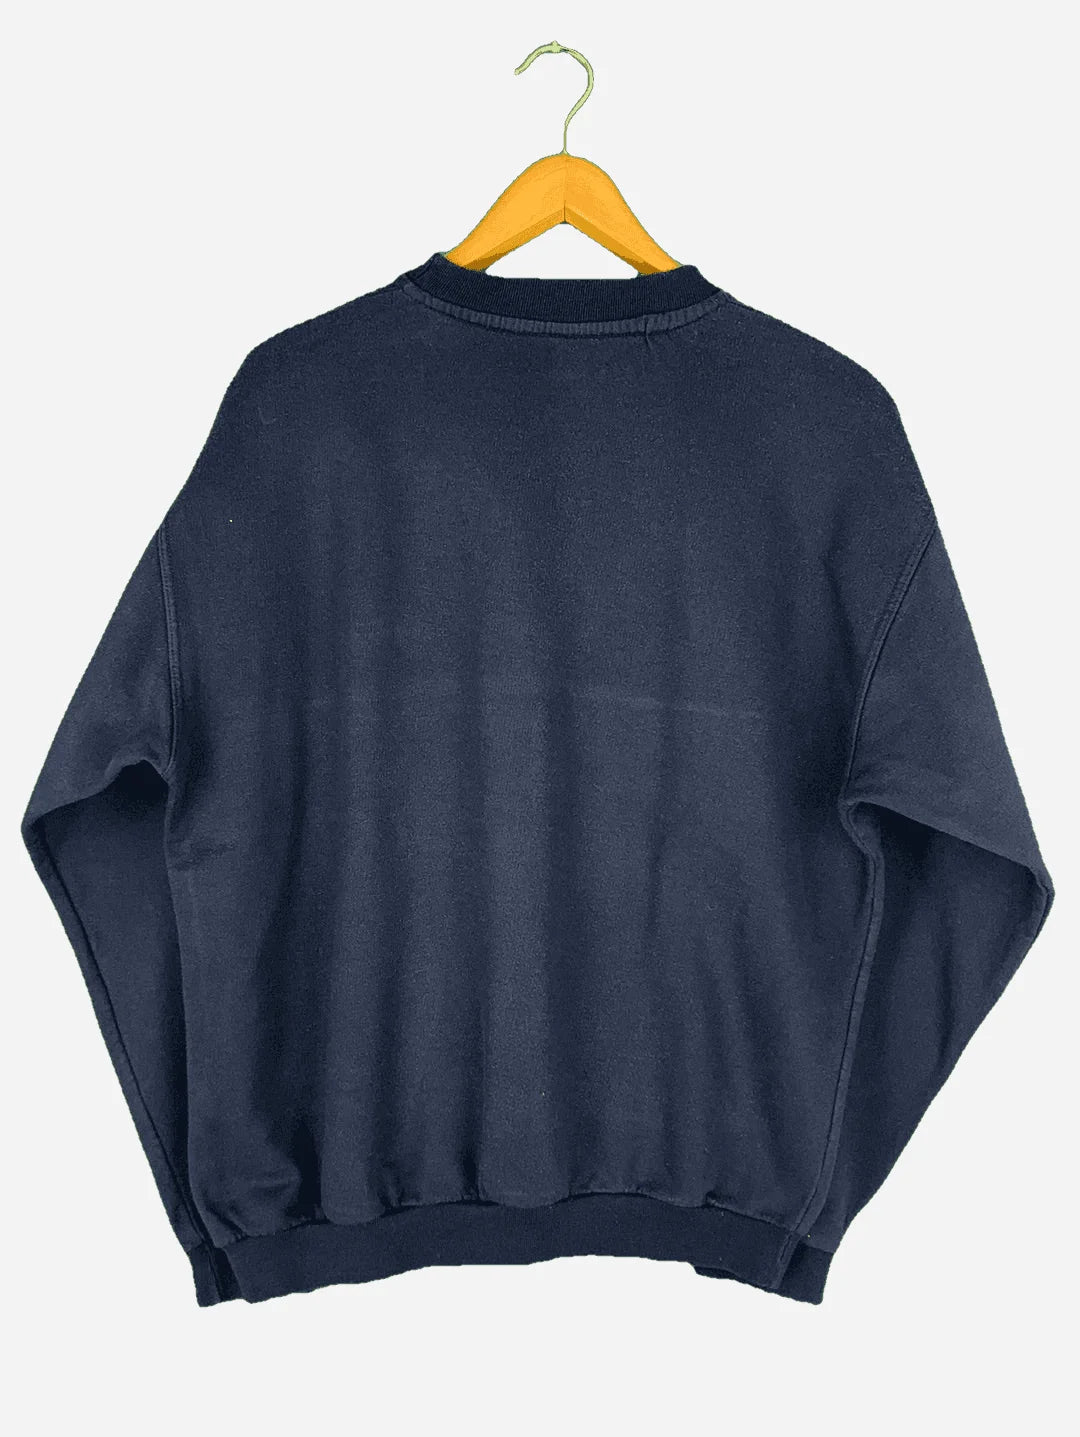 Wrangler Sweater (M)